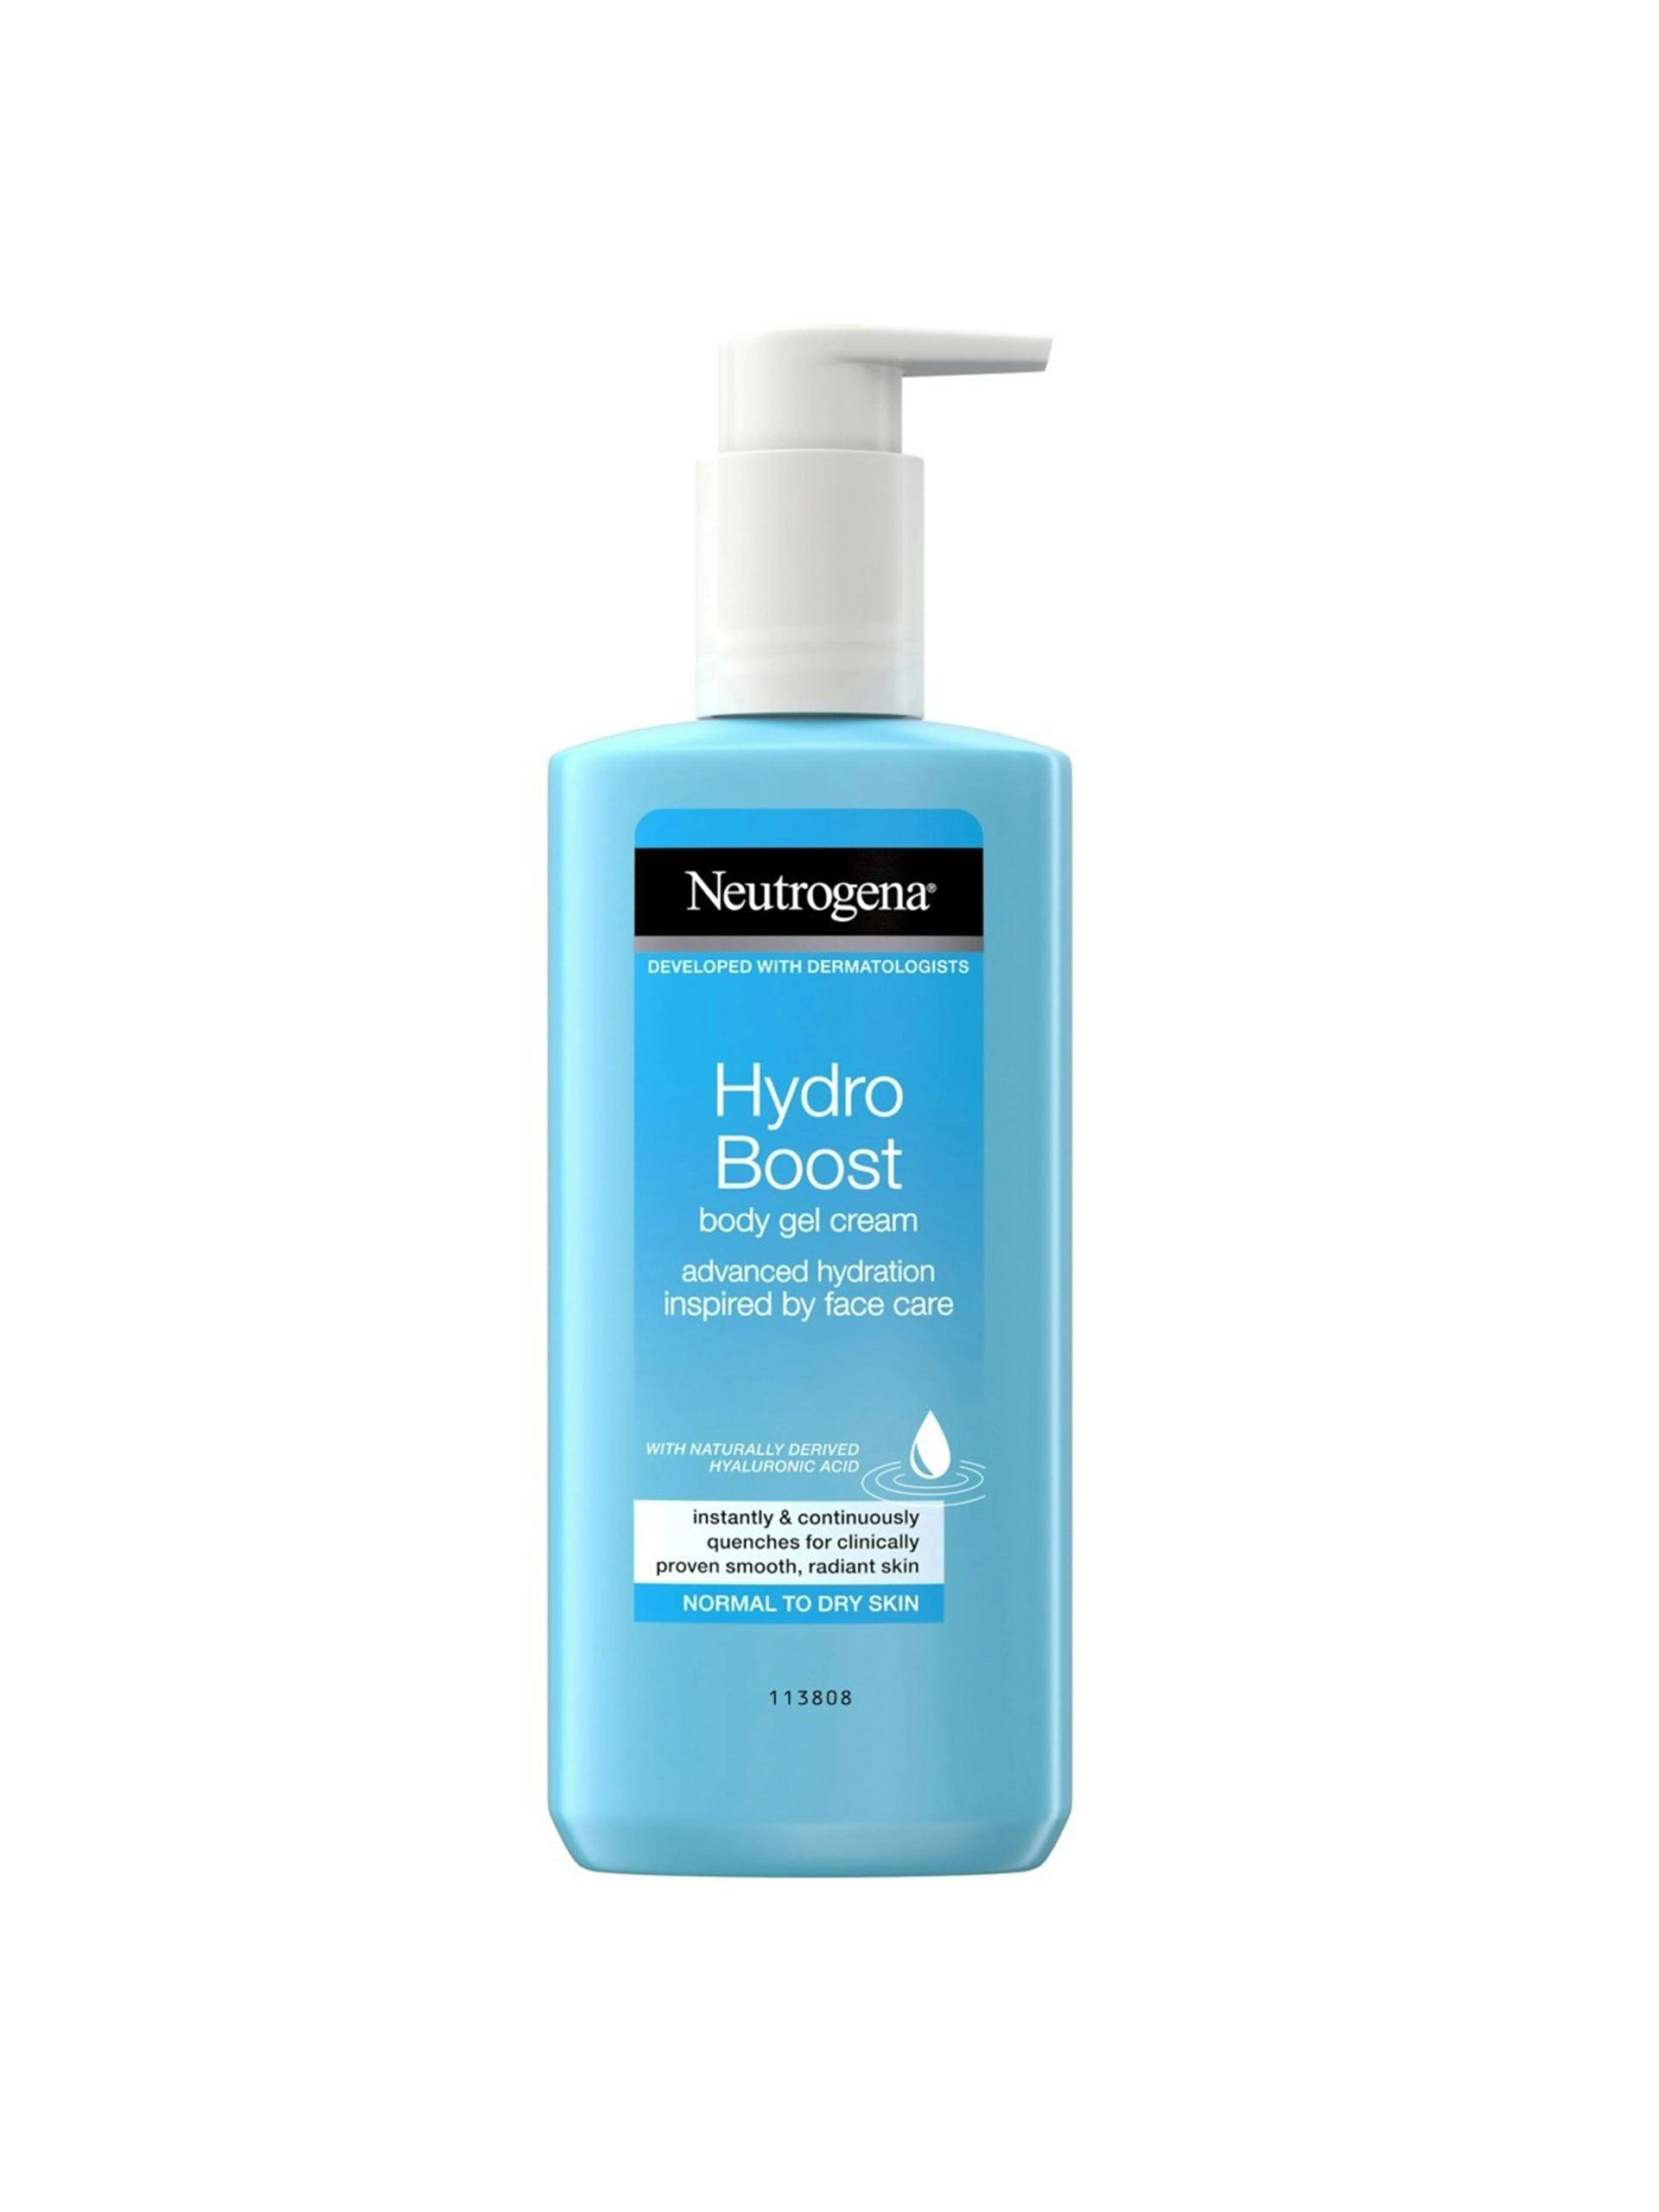 Hydro Boost hydrating body gel